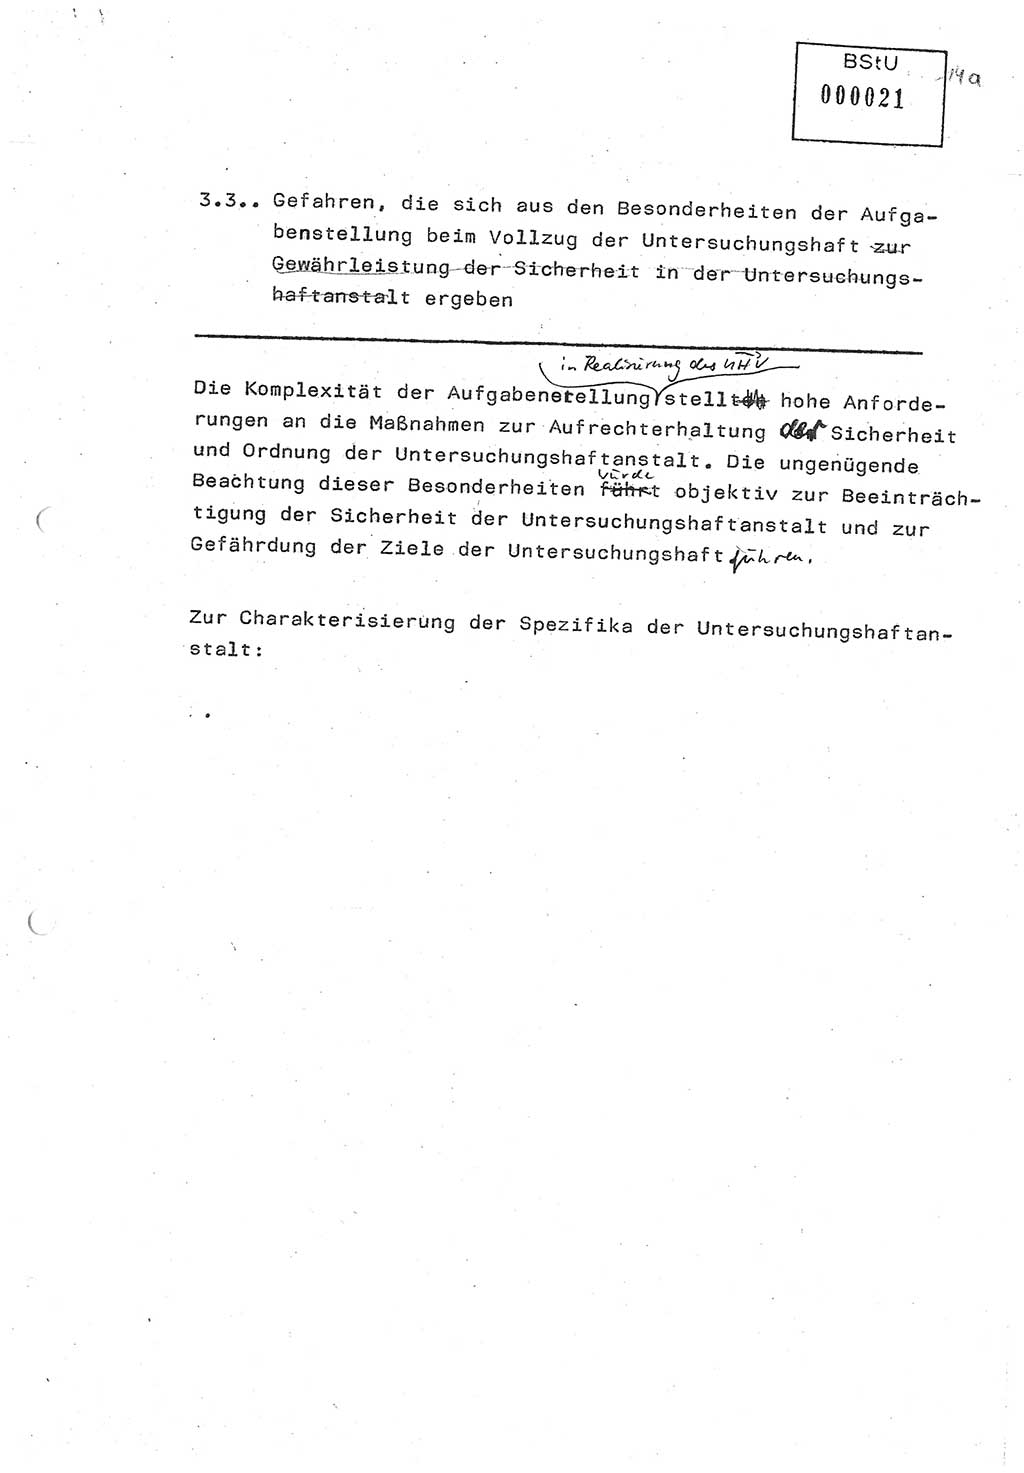 Diplomarbeit (Entwurf) Oberleutnant Peter Parke (Abt. ⅩⅣ), Ministerium für Staatssicherheit (MfS) [Deutsche Demokratische Republik (DDR)], Juristische Hochschule (JHS), Geheime Verschlußsache (GVS) o001-98/86, Potsdam 1986, Seite 21 (Dipl.-Arb. MfS DDR JHS GVS o001-98/86 1986, S. 21)